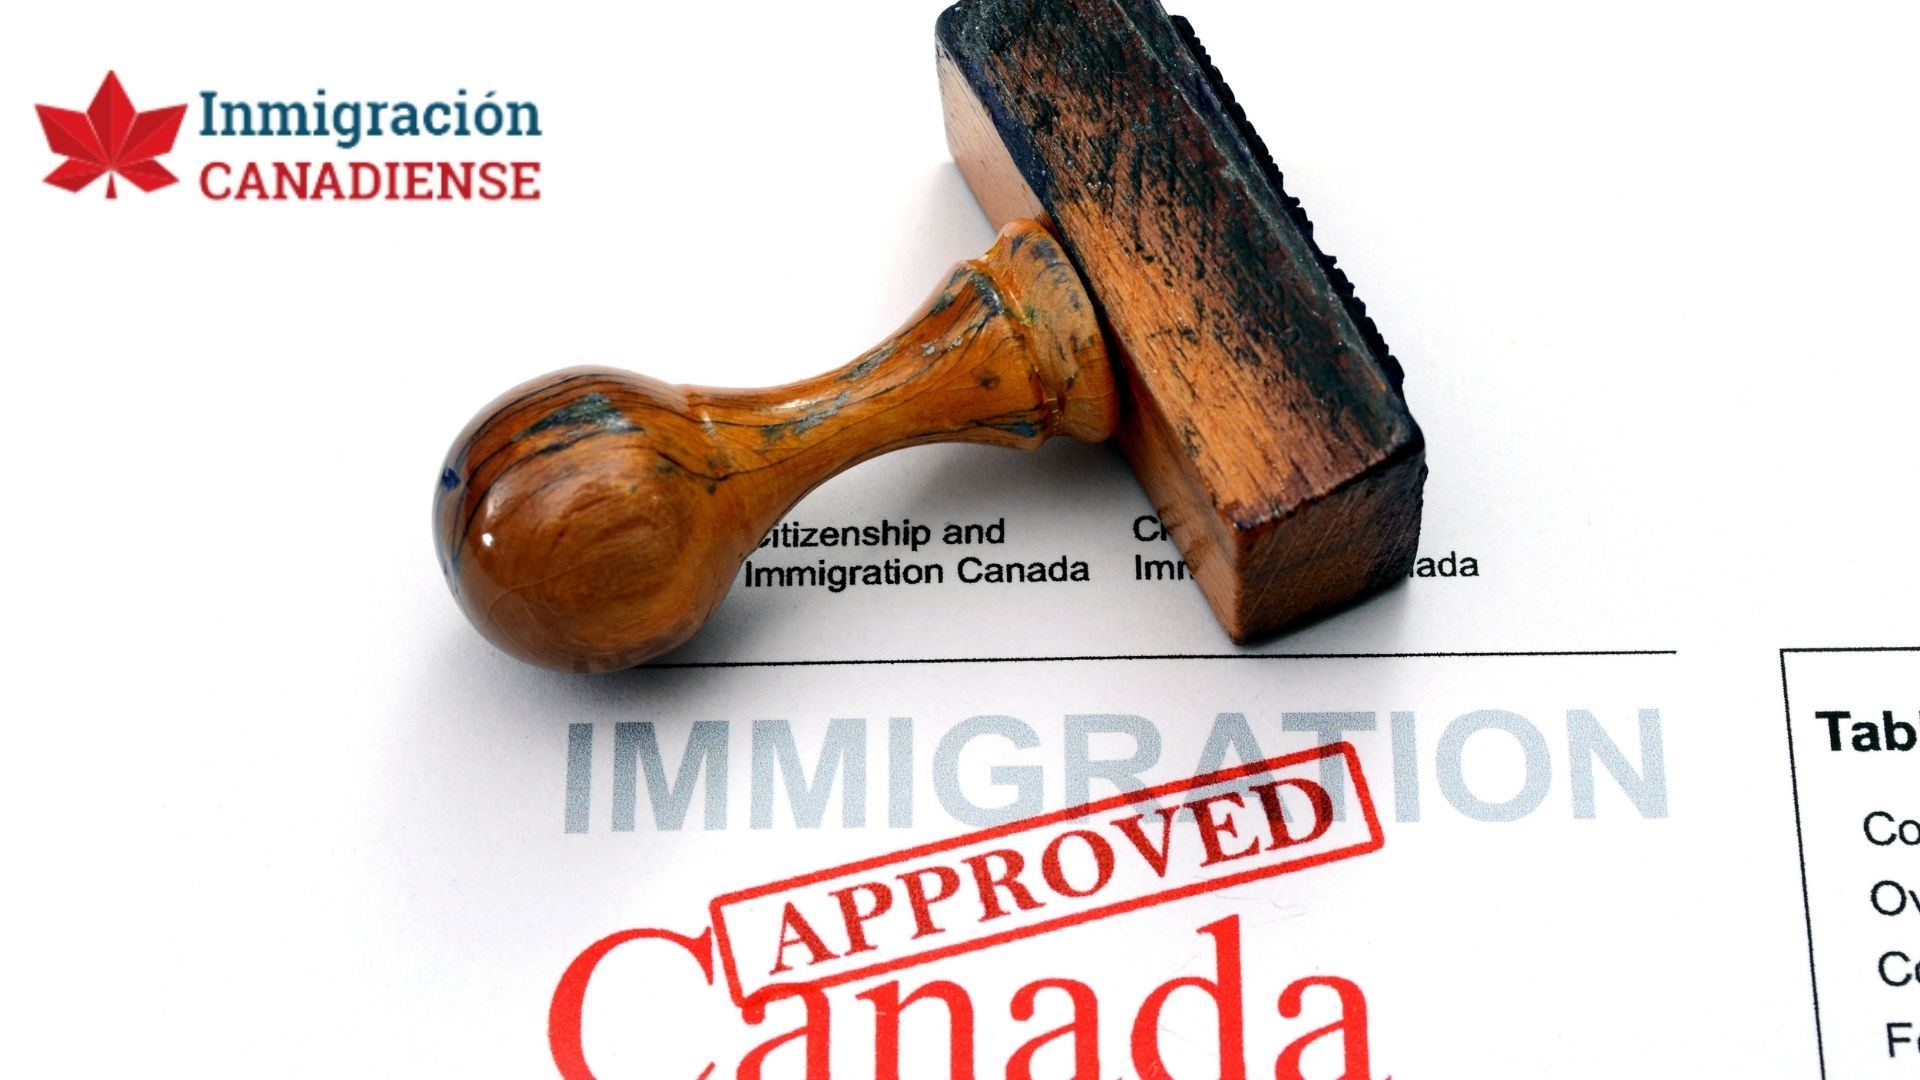 IC Inmigración Canadiense